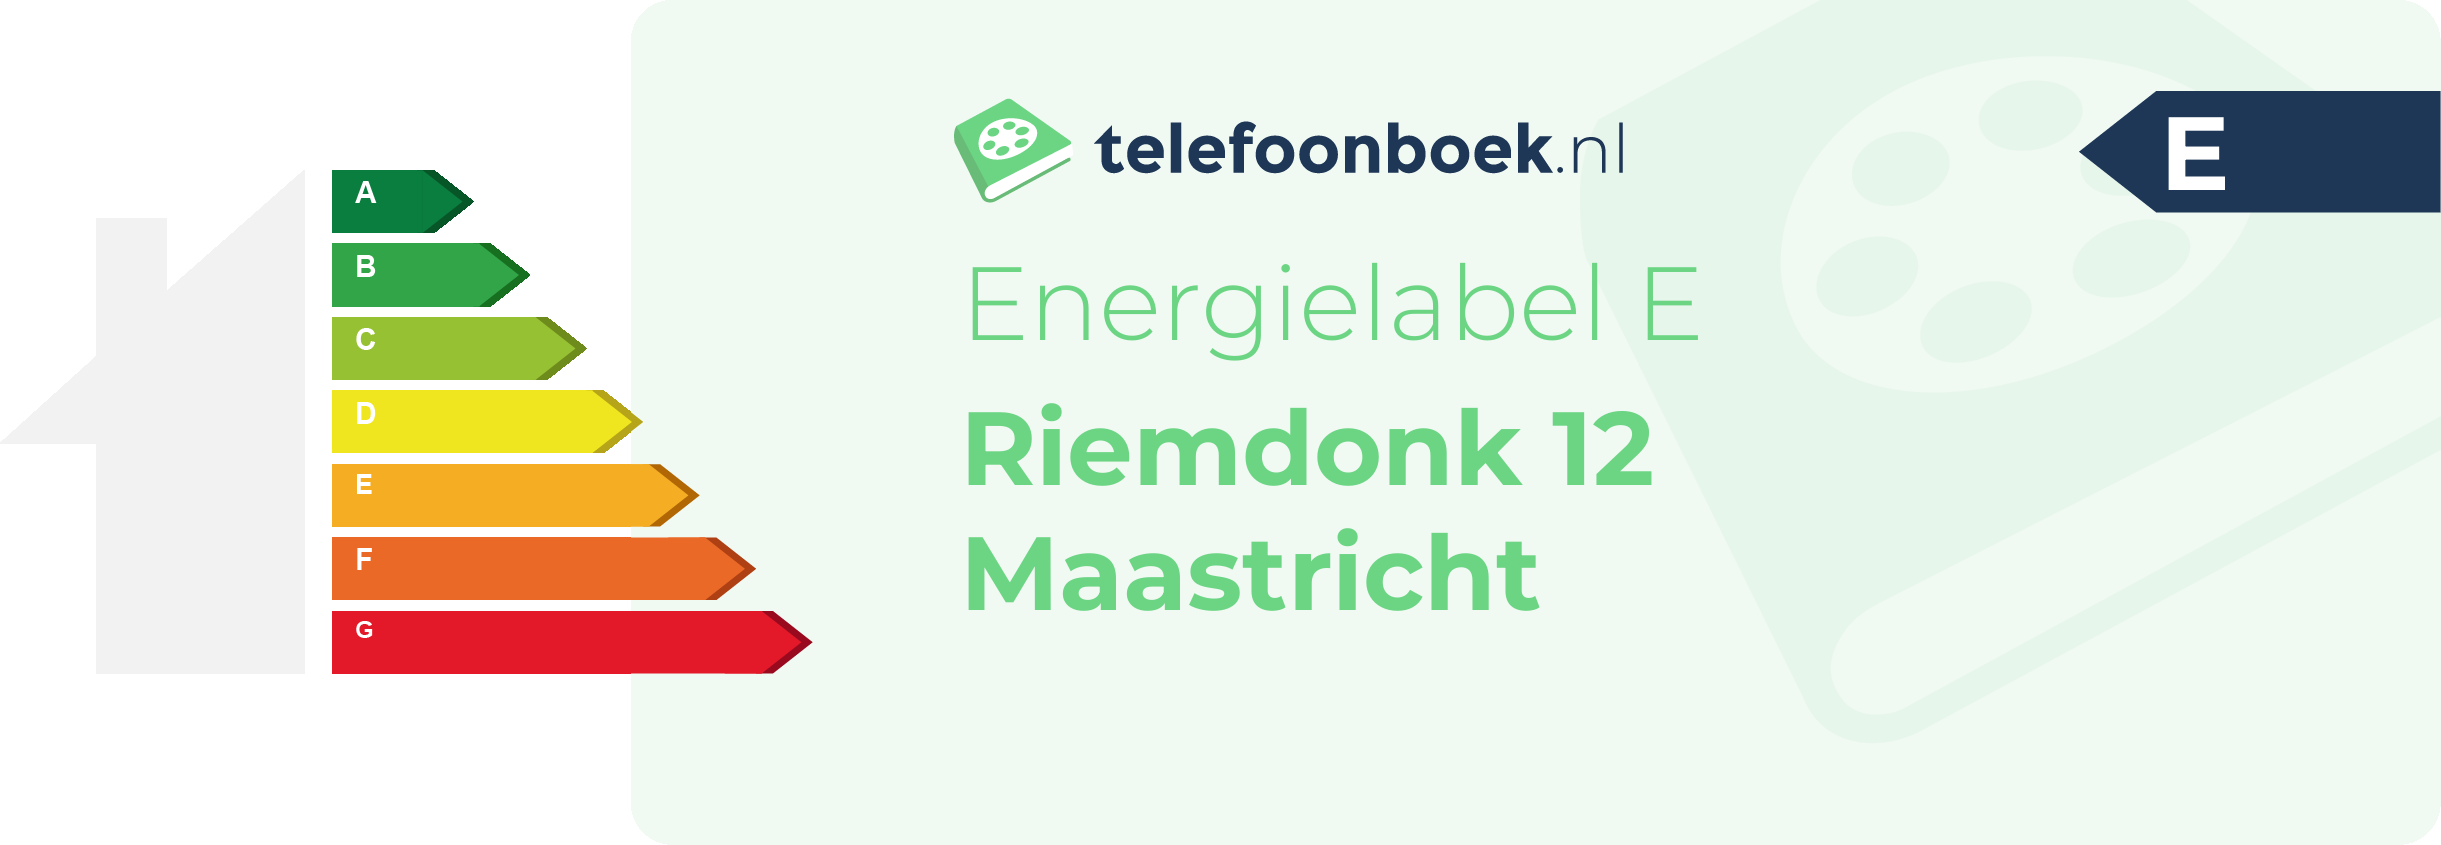 Energielabel Riemdonk 12 Maastricht